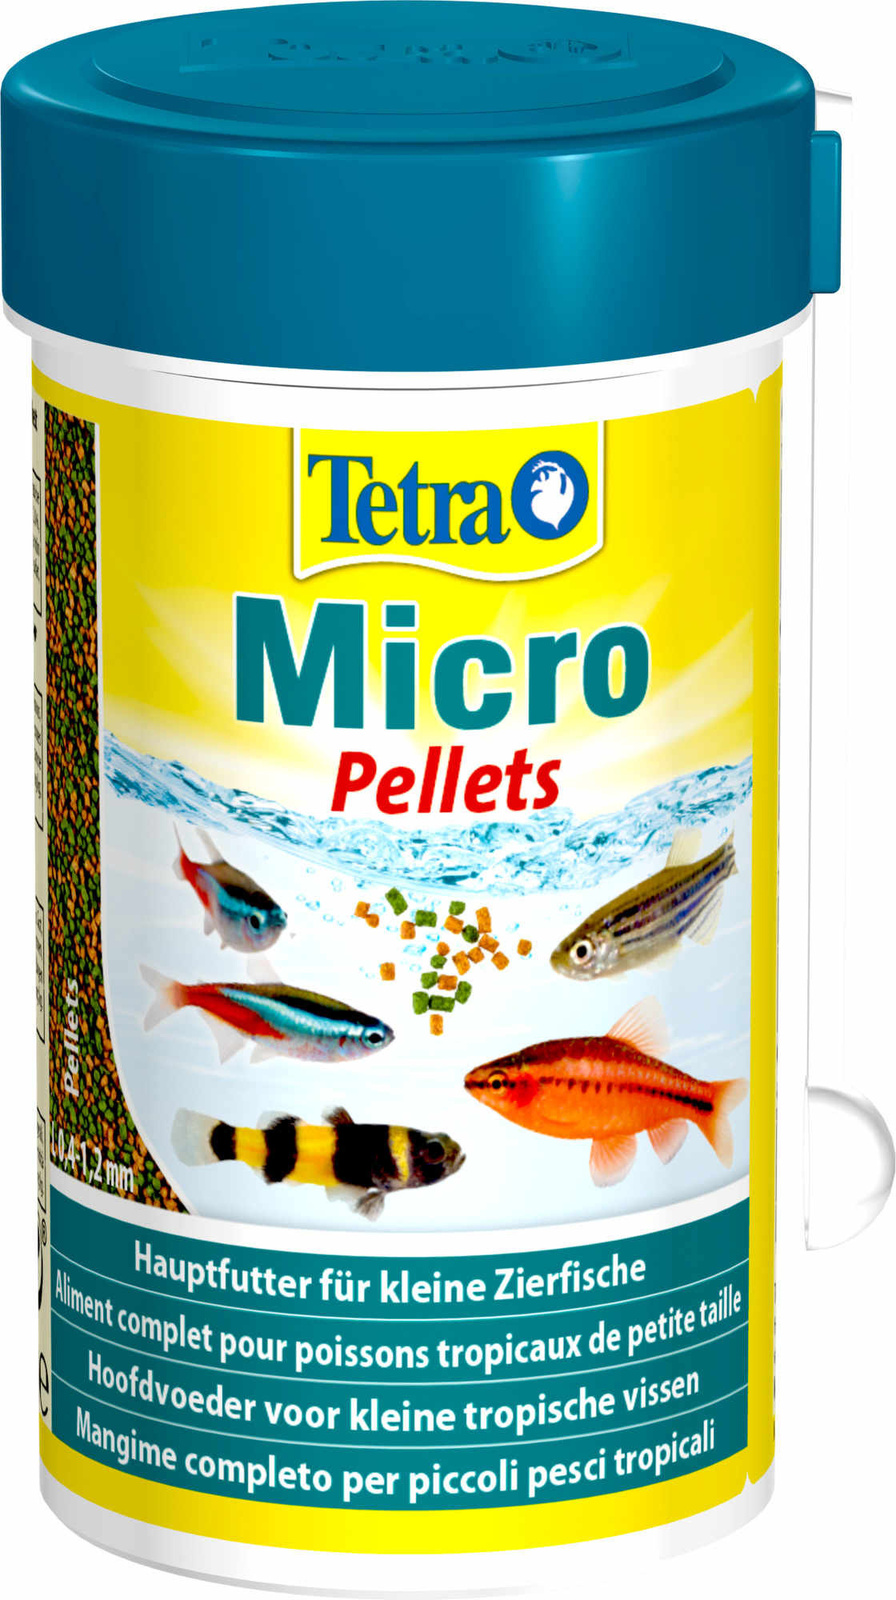 Tetra (корма) Tetra (корма) корм для для всех видов мелких рыб, микрошарики (65 г) tetra корма tetra корма корм для всех видов мелких рыб микрогранулы 45 г